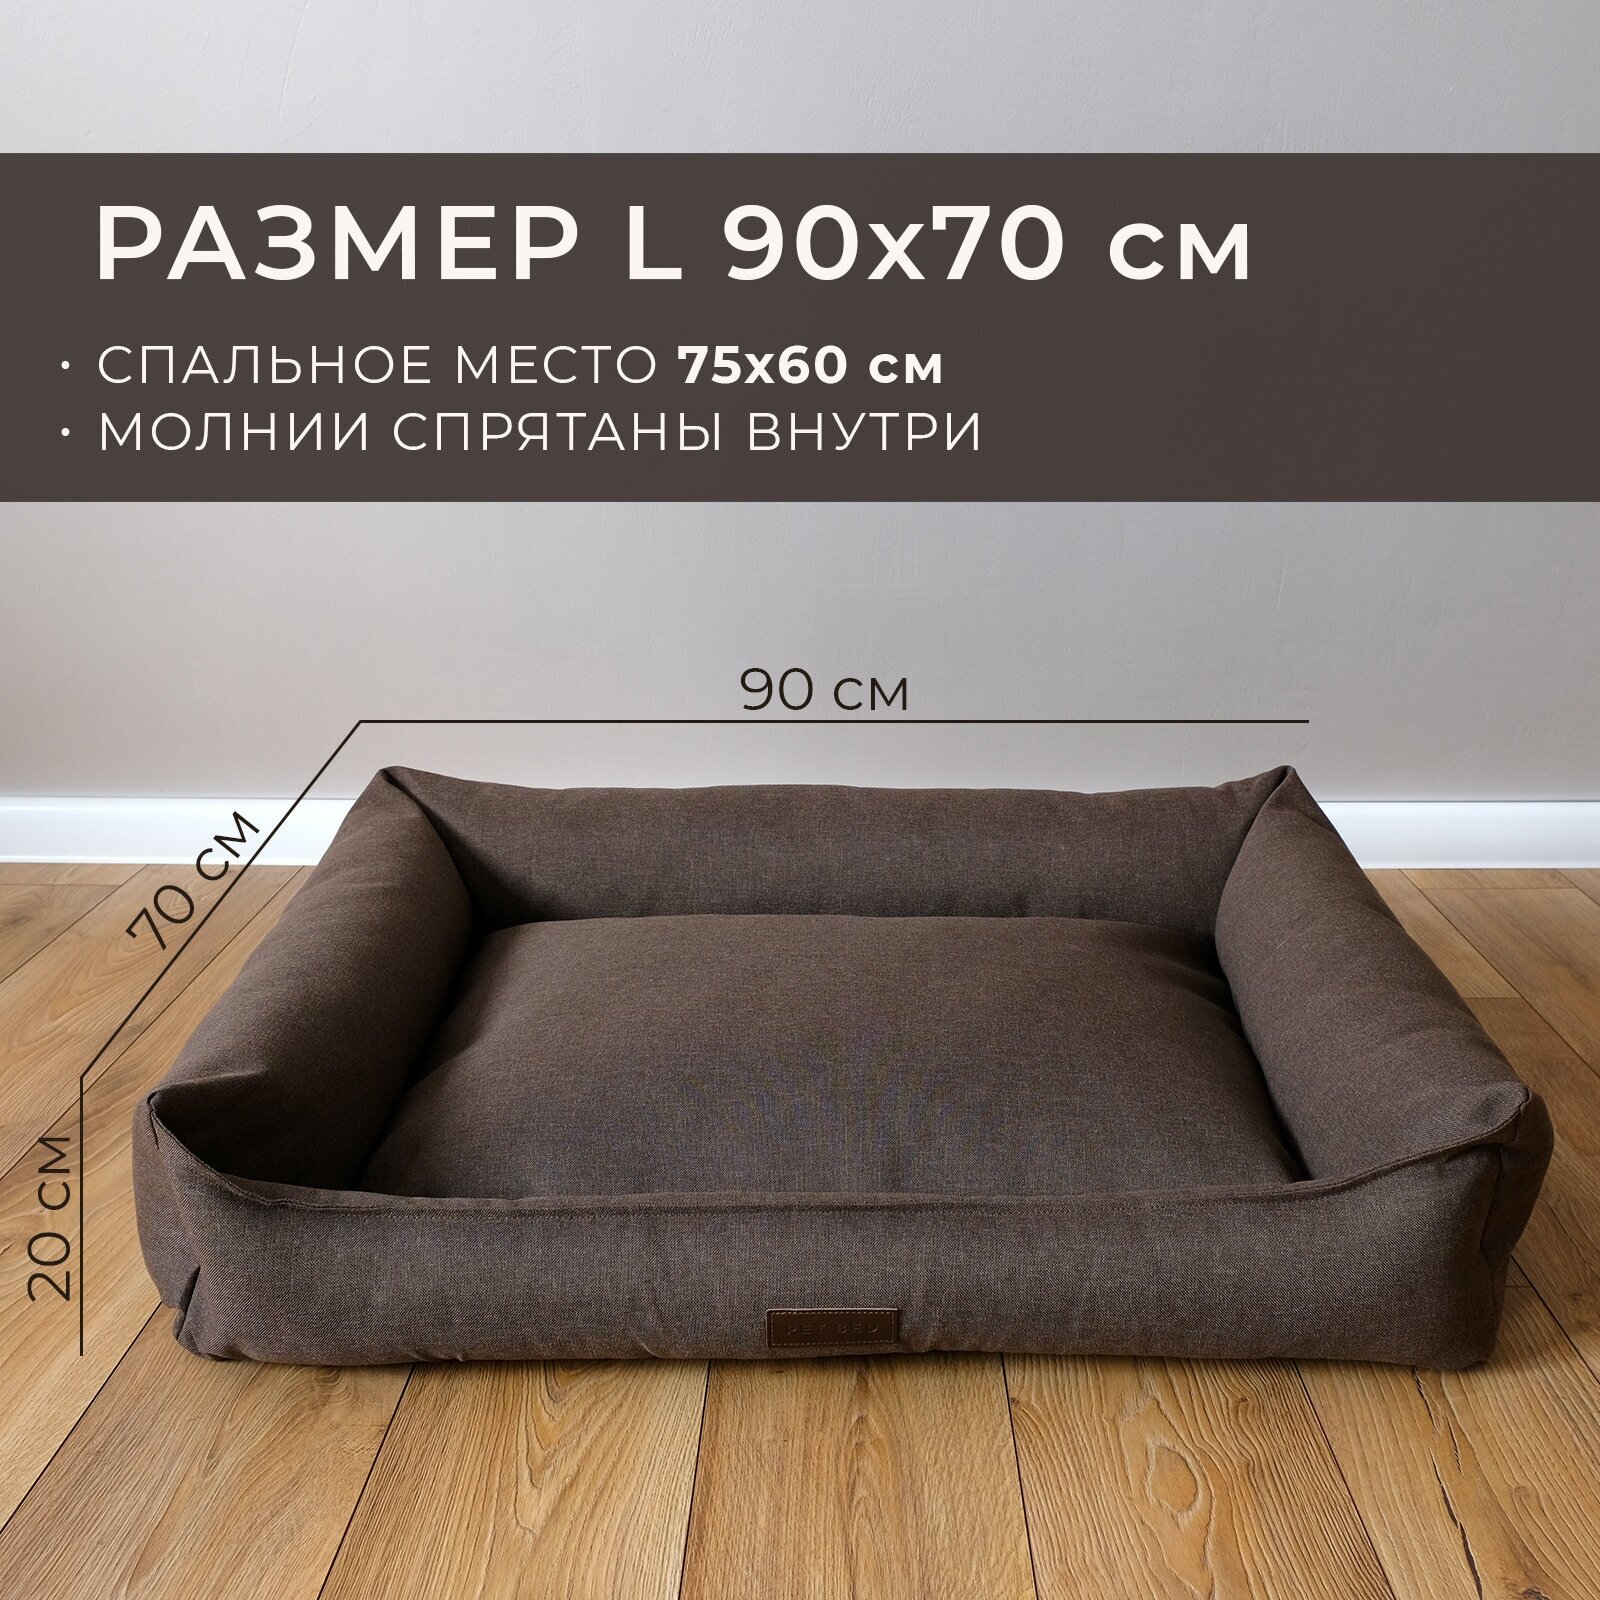 Лежанка для животных со съемным чехлом PET BED Рогожка, размер L 90х70 см, коричневая - фотография № 2